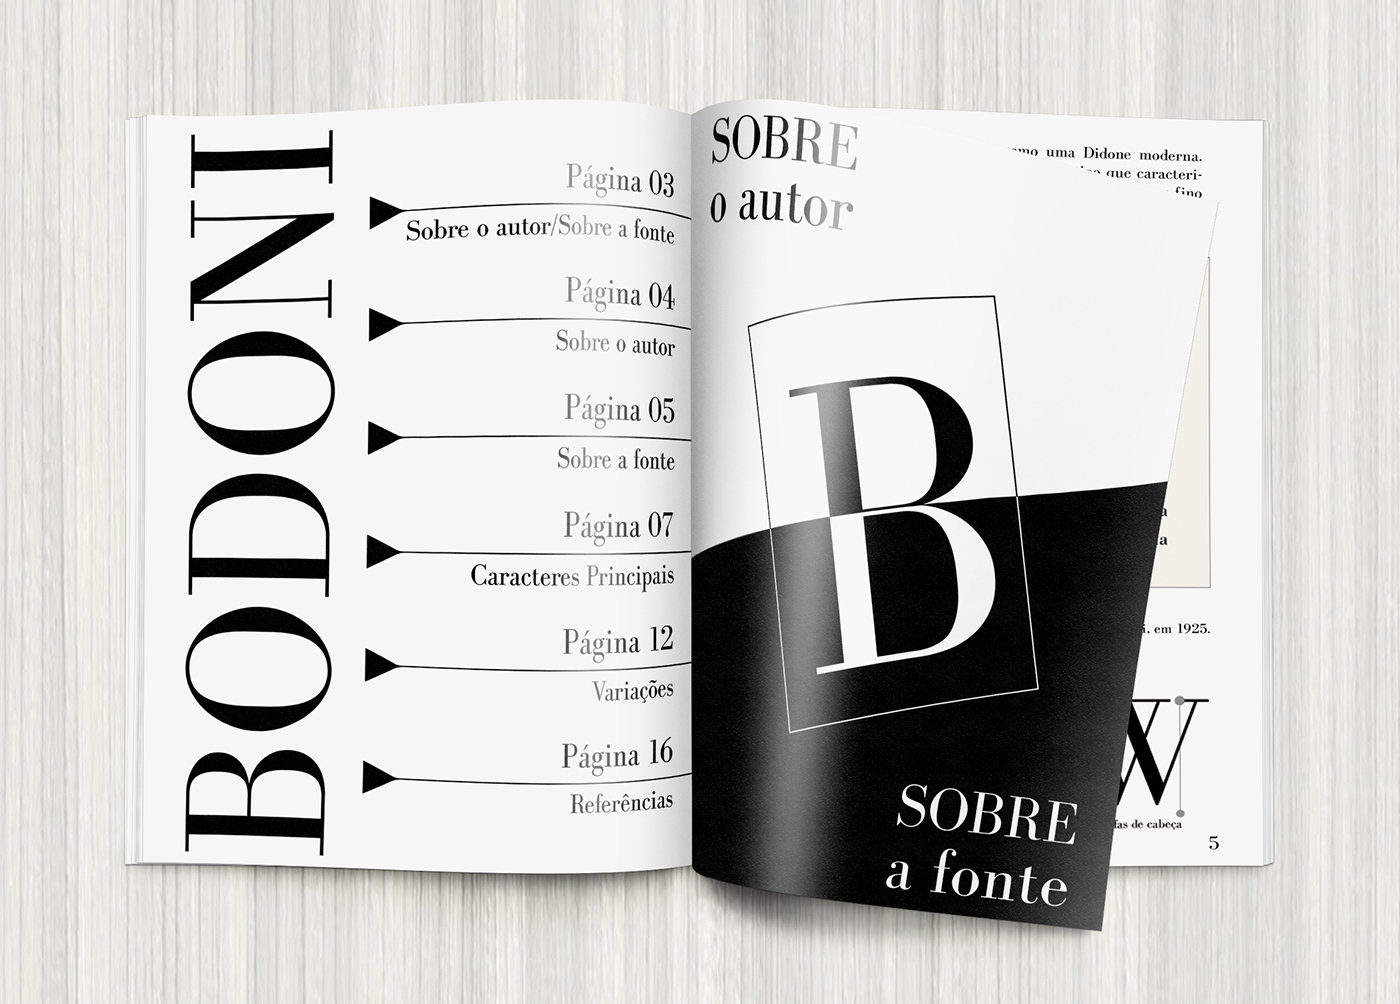 design revista magazine bodoni design gráfico impresso